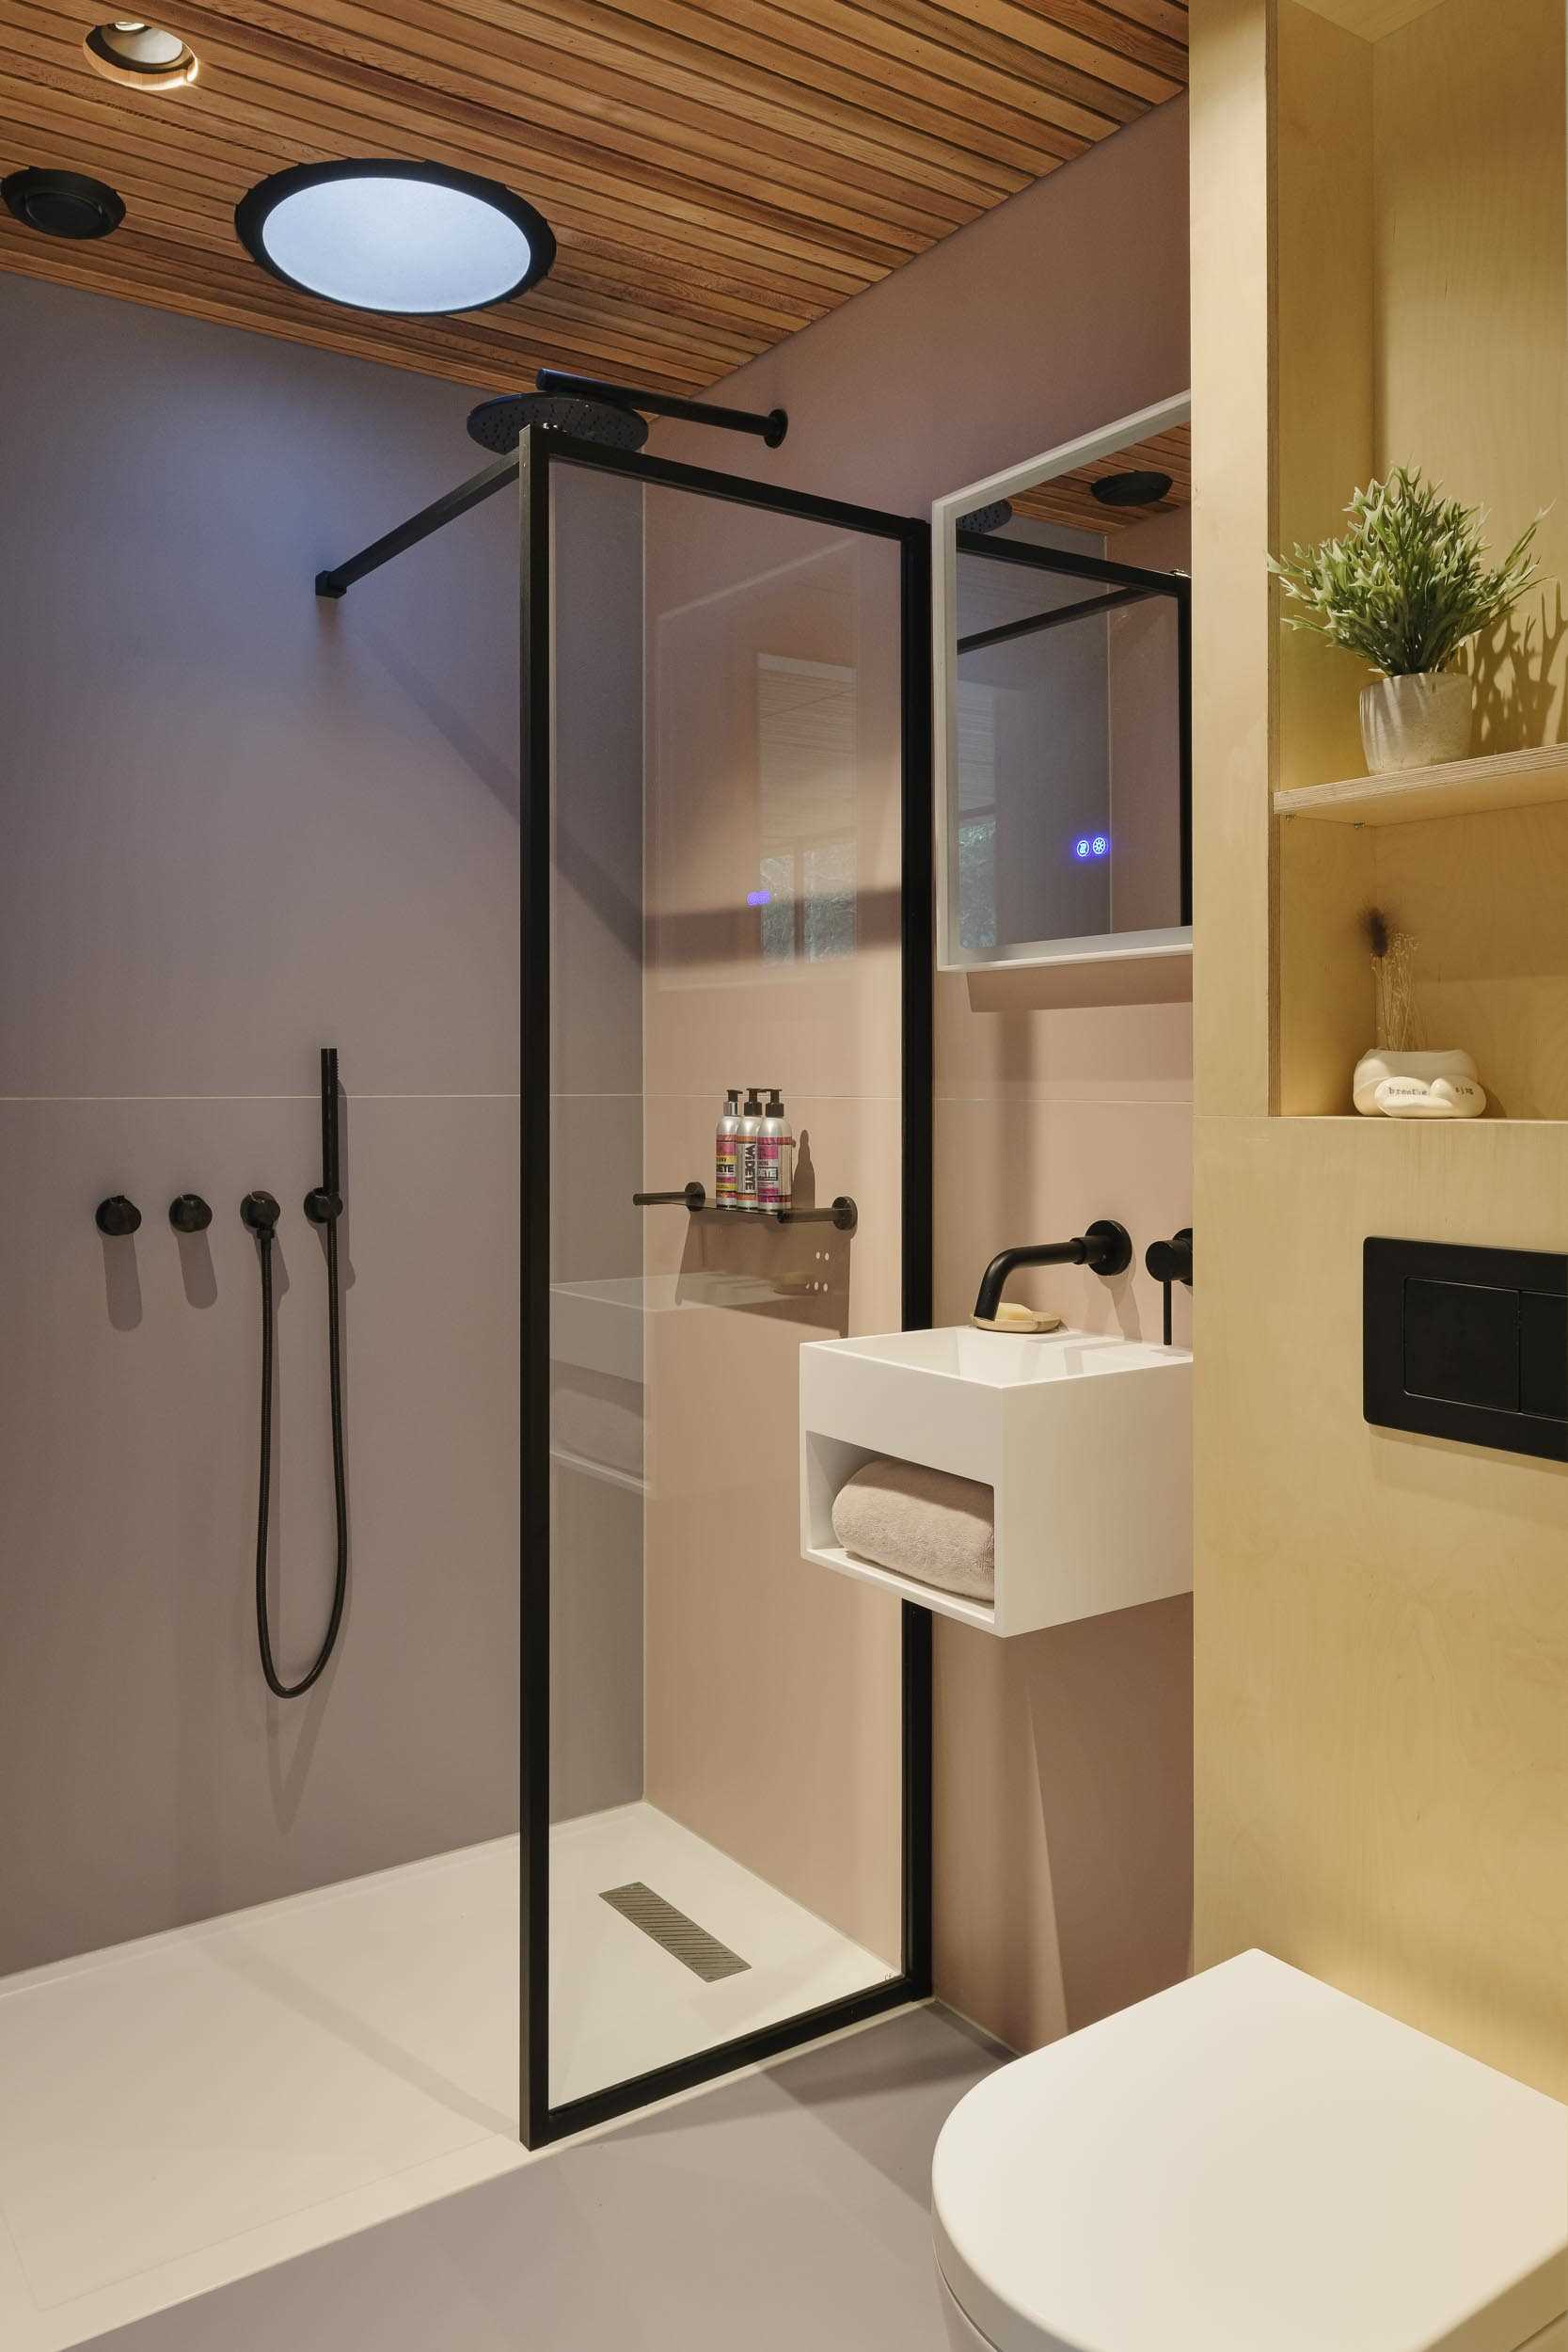 یک حمام اختصاصی کوچک با دوش دستشویی و لهجه‌های مشکی.